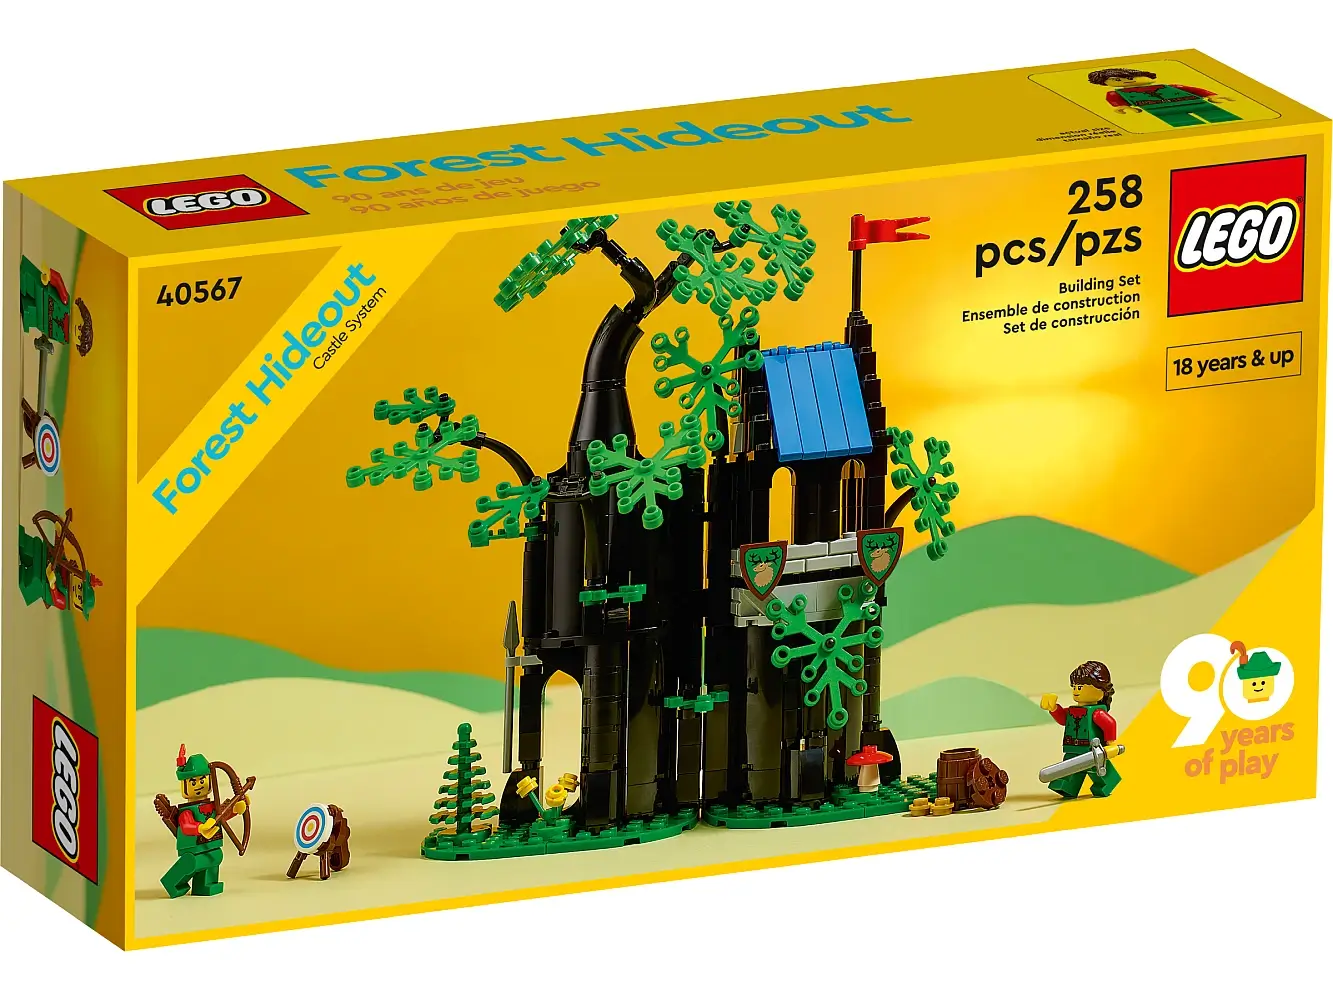 Zdjęcie pudełka zestawu 40567 z serii LEGO® Castle